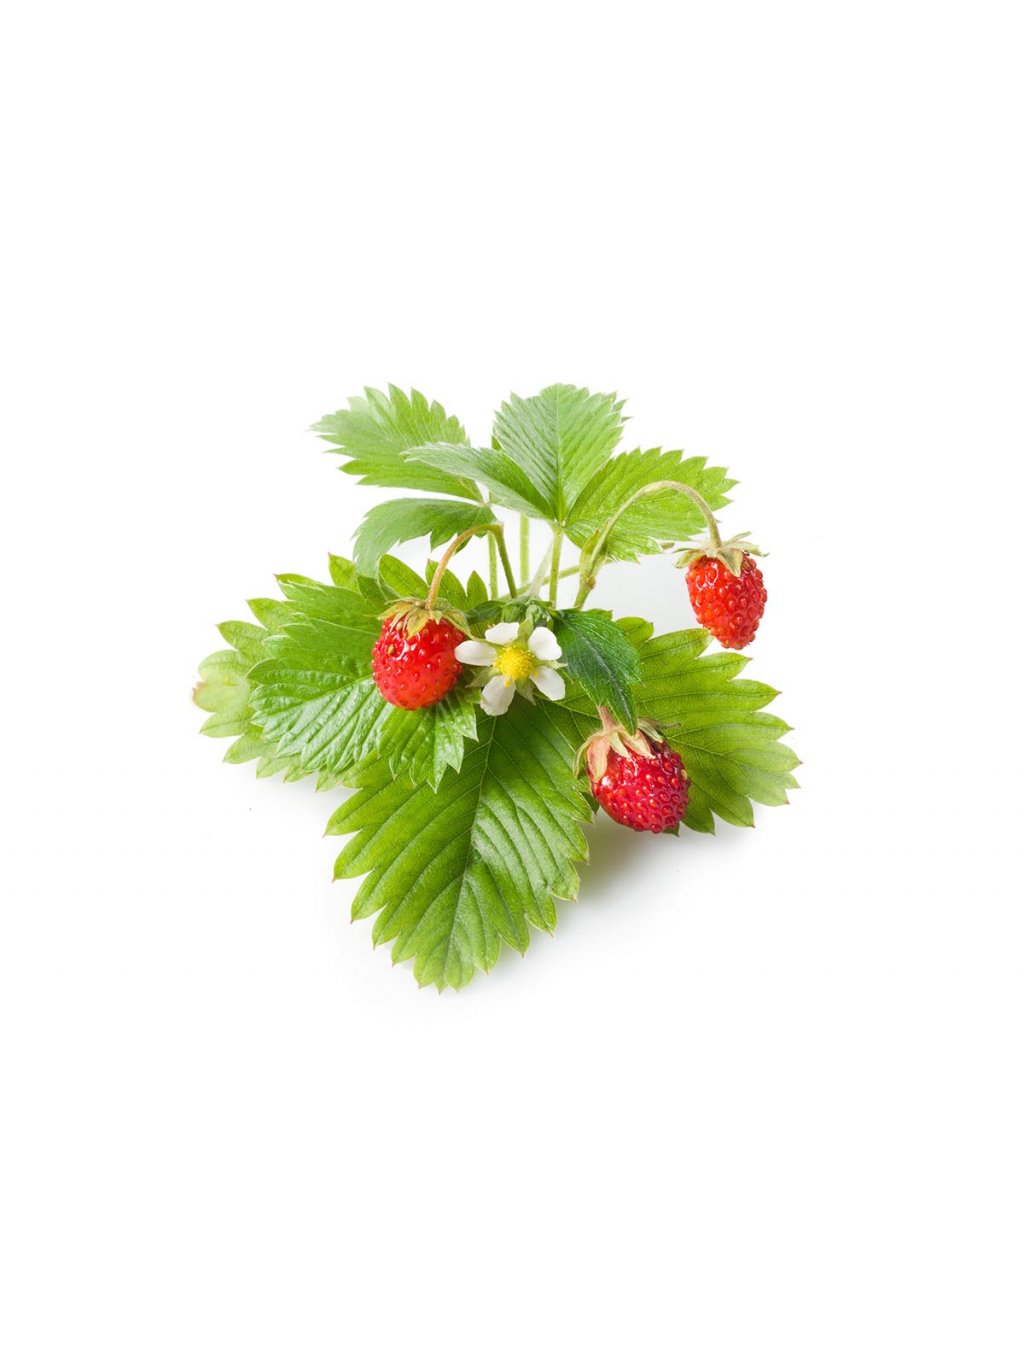 Wild Strawberry plant 1200x960 da74a06b f30e 4a94 81e6 154181b2fb7f 1200x